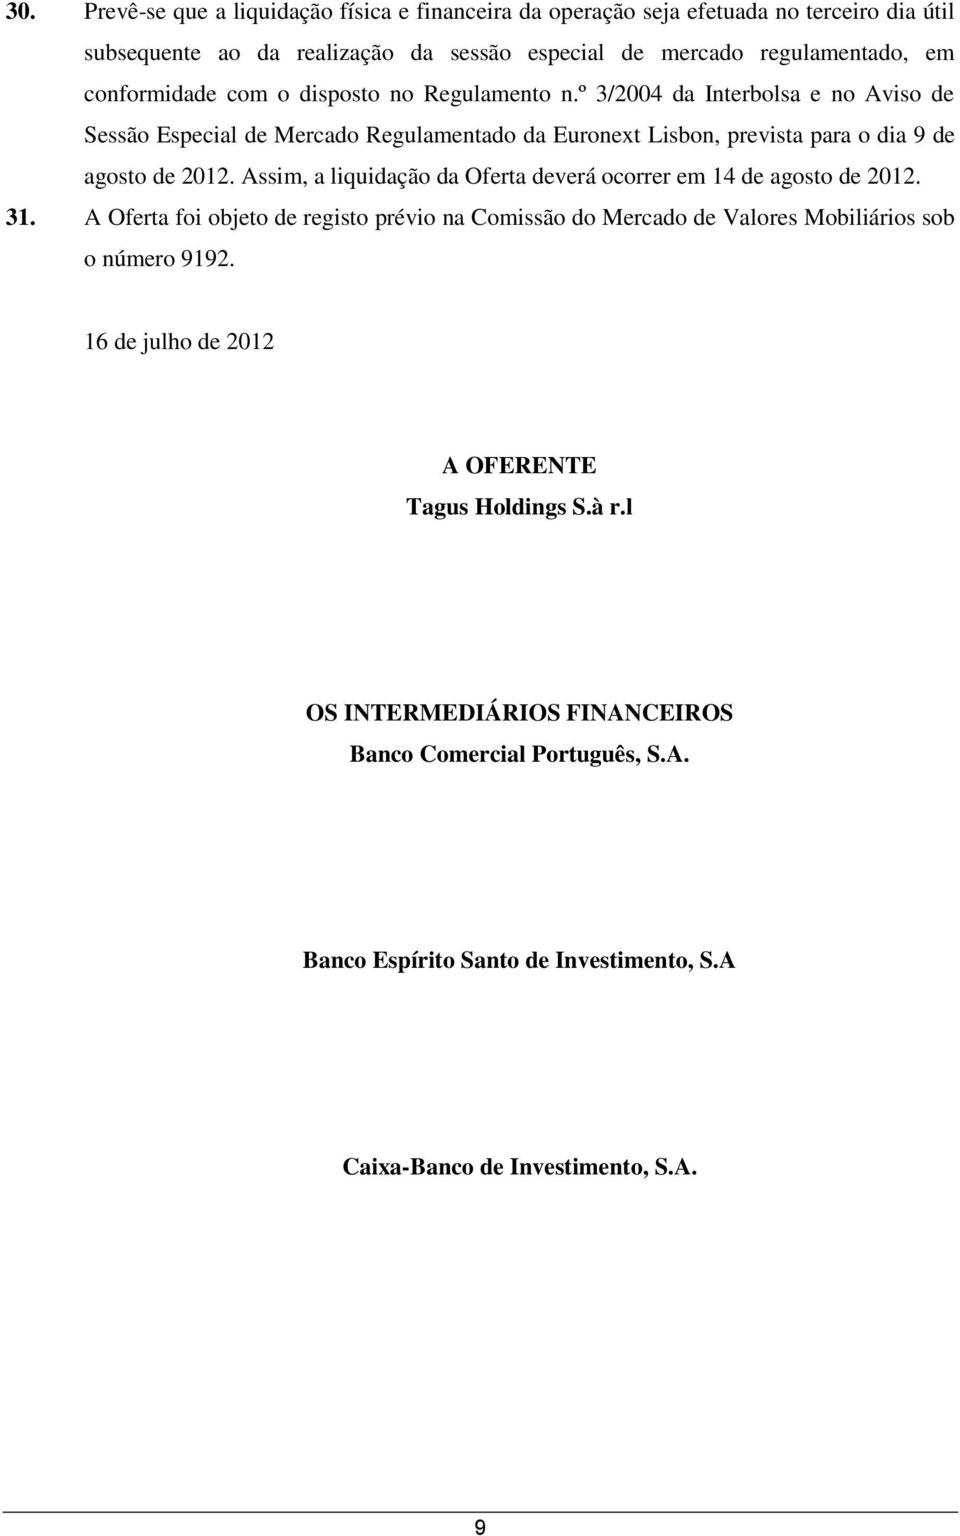 º 3/2004 da Interbolsa e no Aviso de Sessão Especial de Mercado Regulamentado da Euronext Lisbon, prevista para o dia 9 de agosto de 2012.